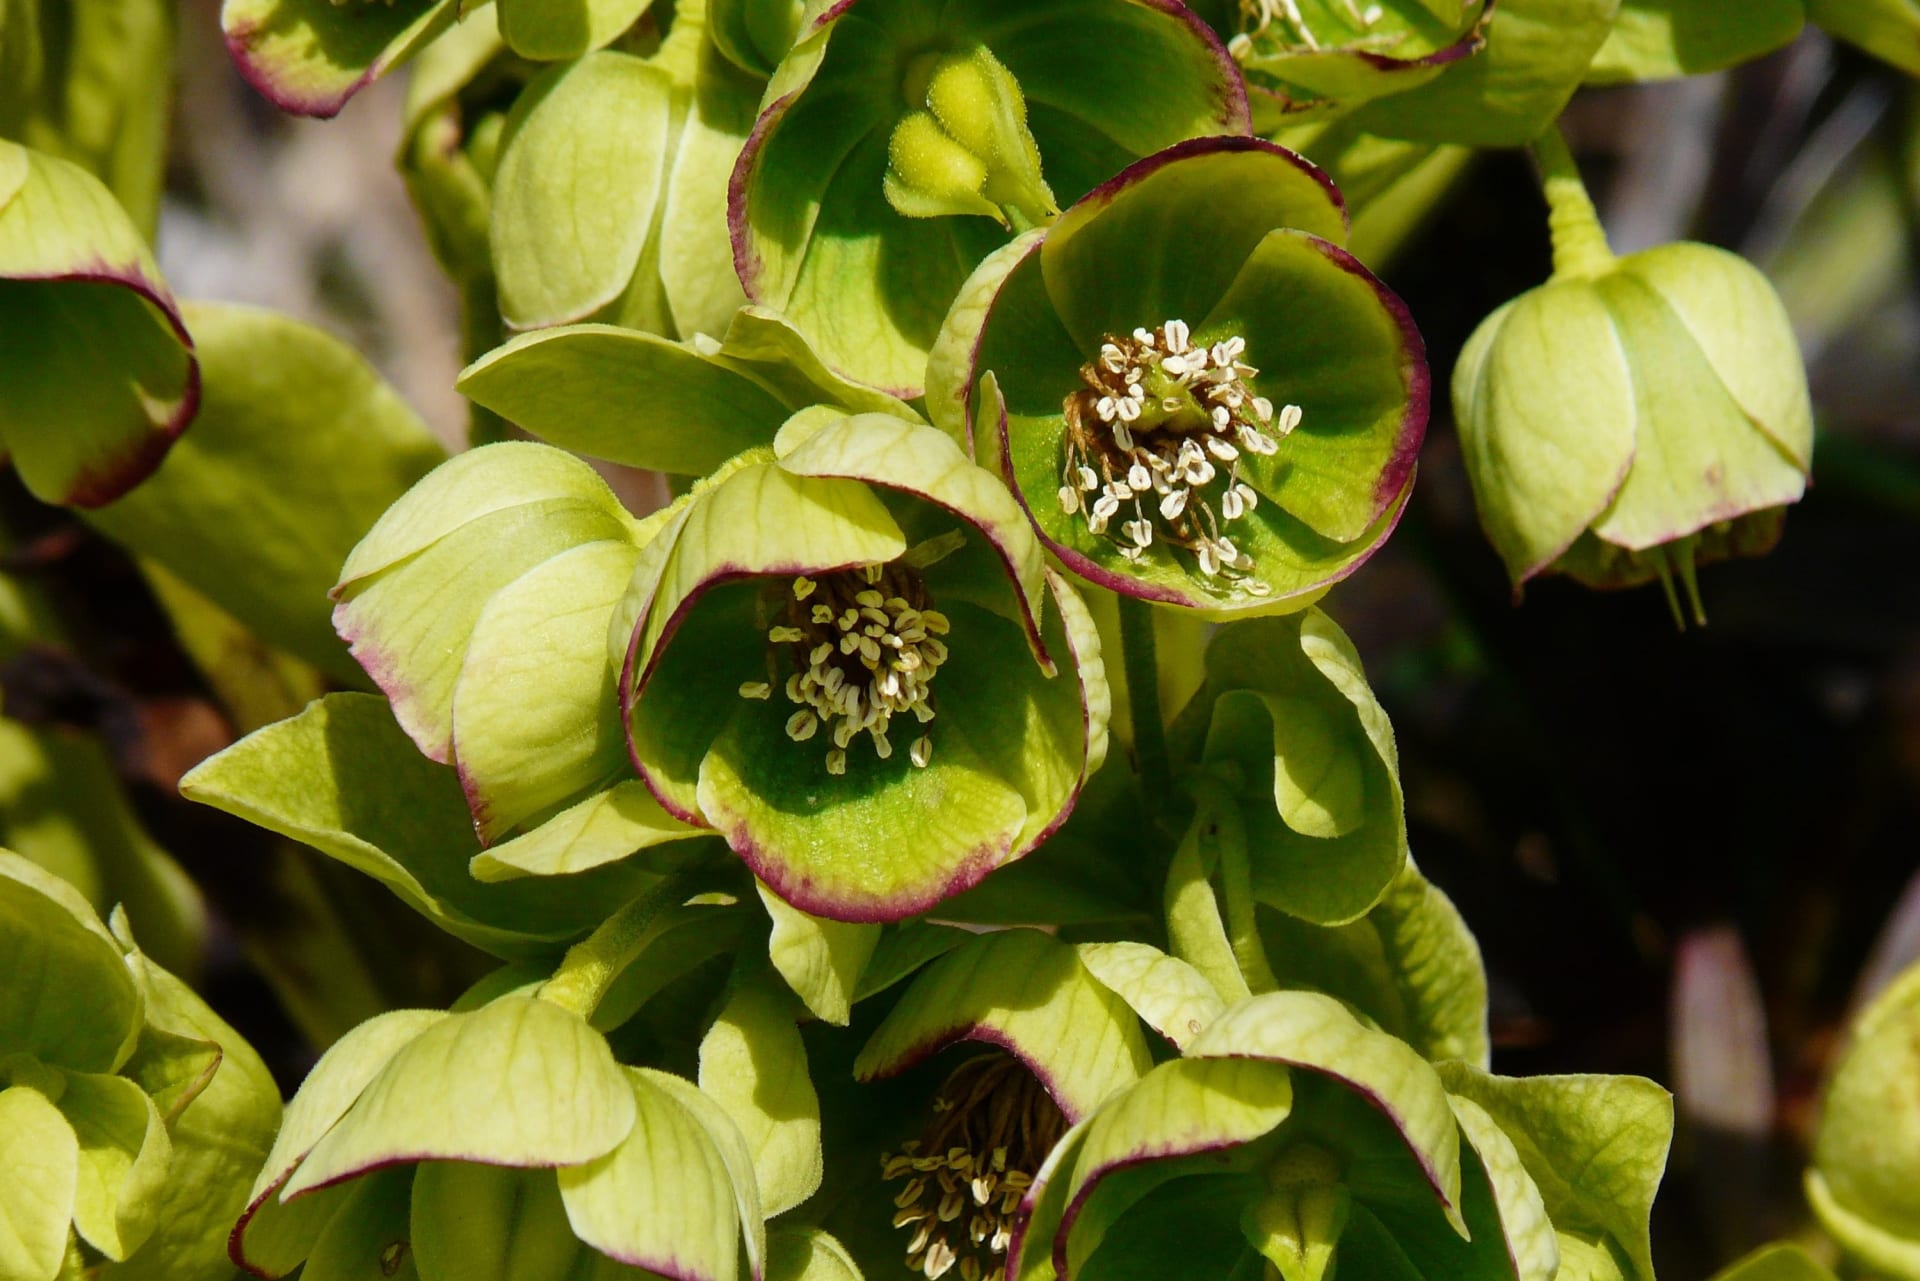 Mohutná čemeřice smrdutá (Helleborus foetidus) má zelené květy s dekorativním vínovým lemováním a listy ve tvaru zvonku.